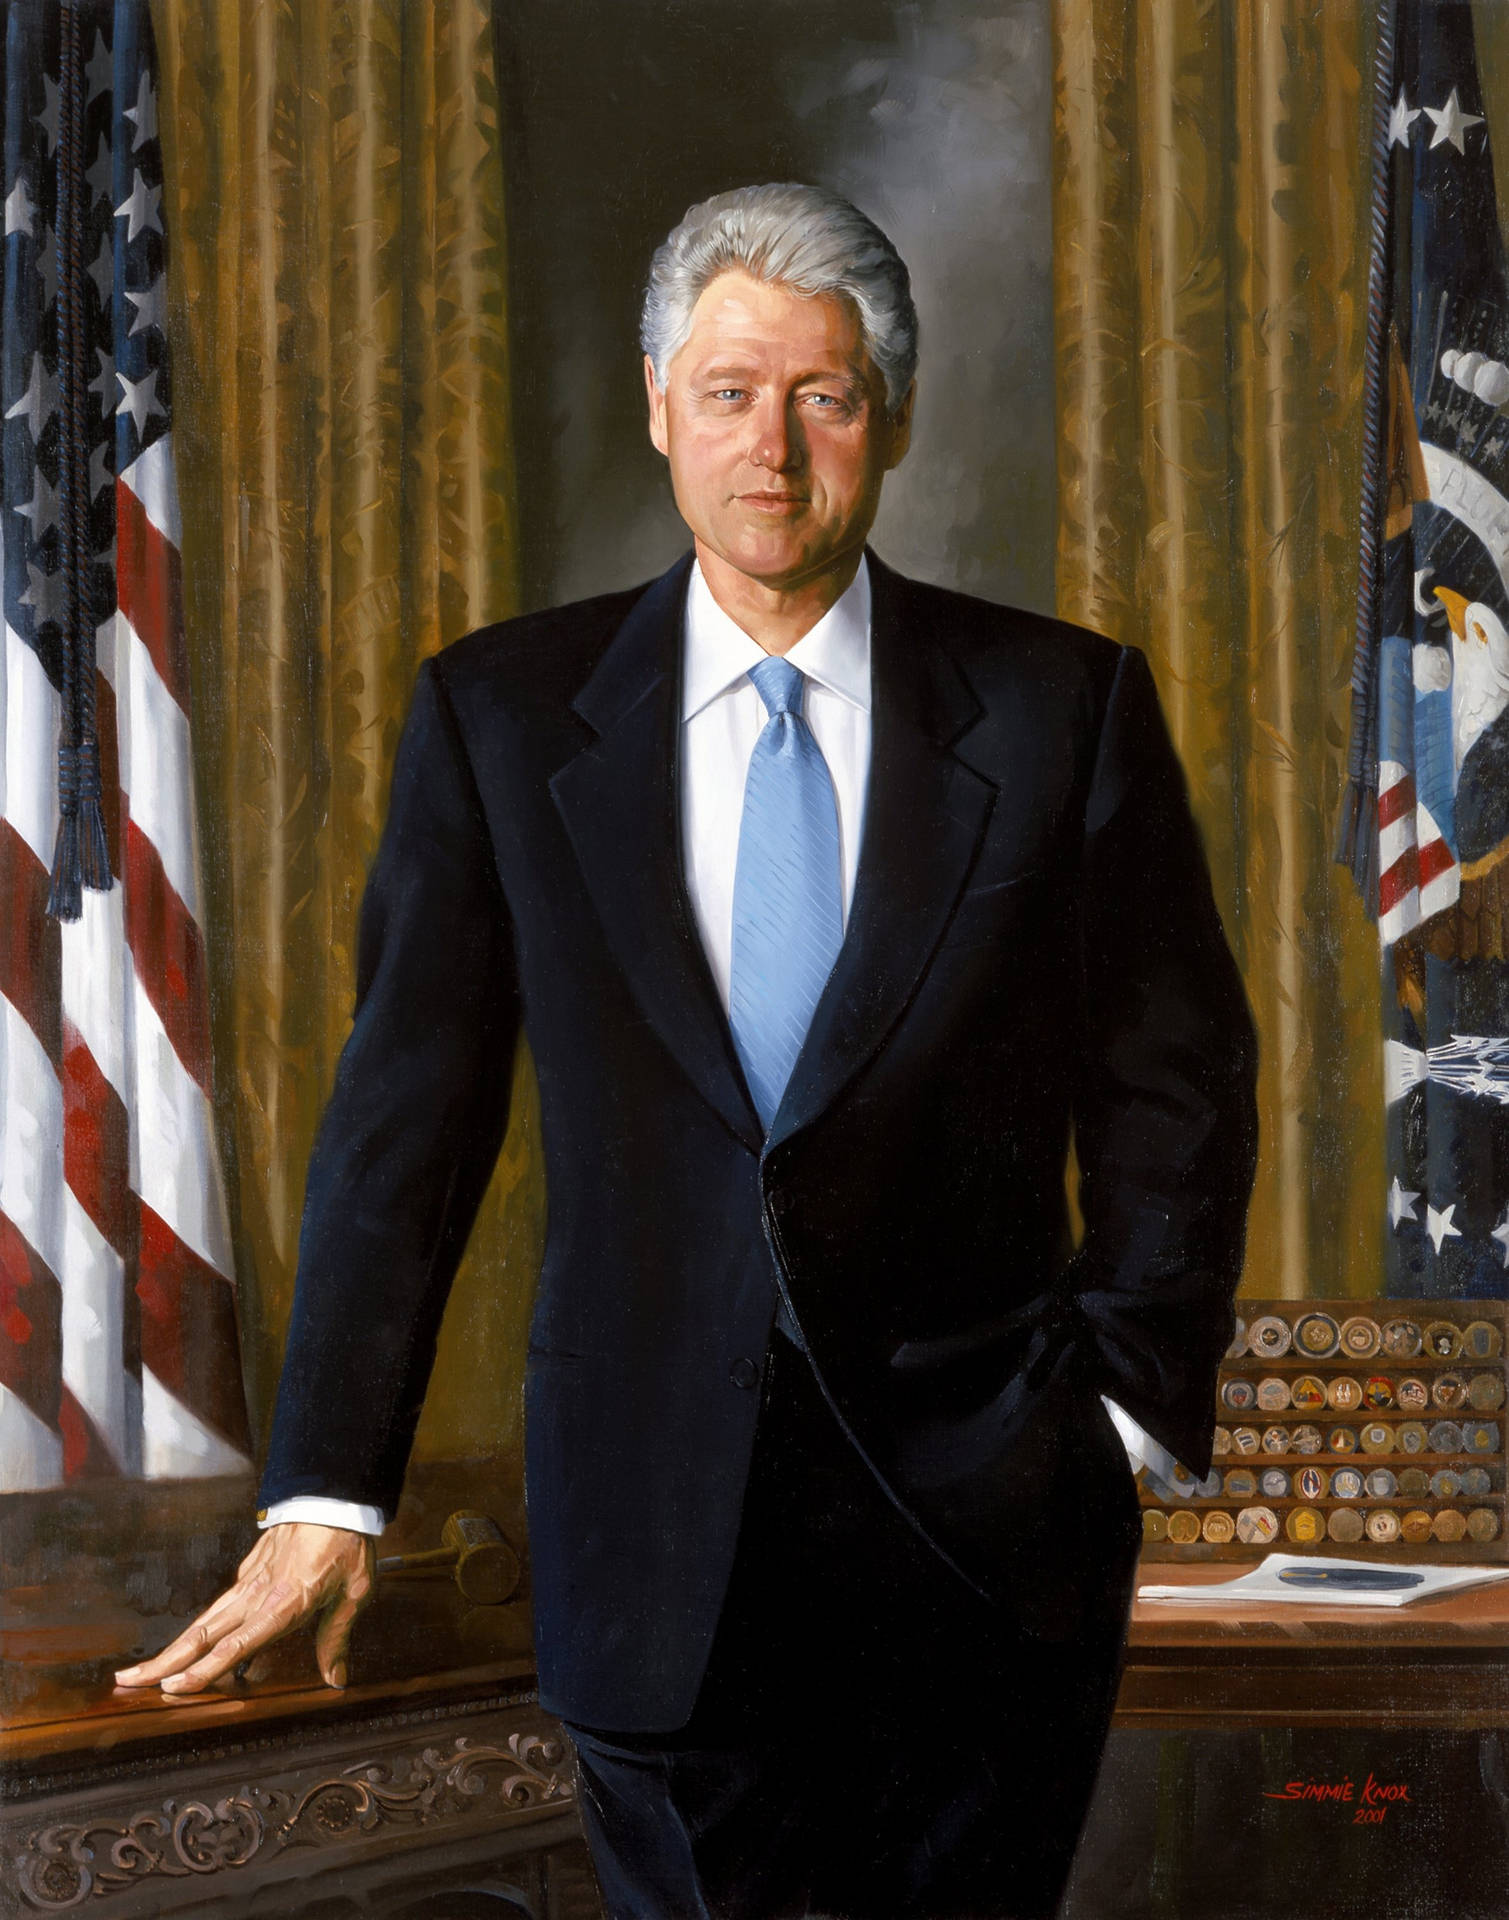 42nd President Bill Clinton in an HD Portrait Wallpaper